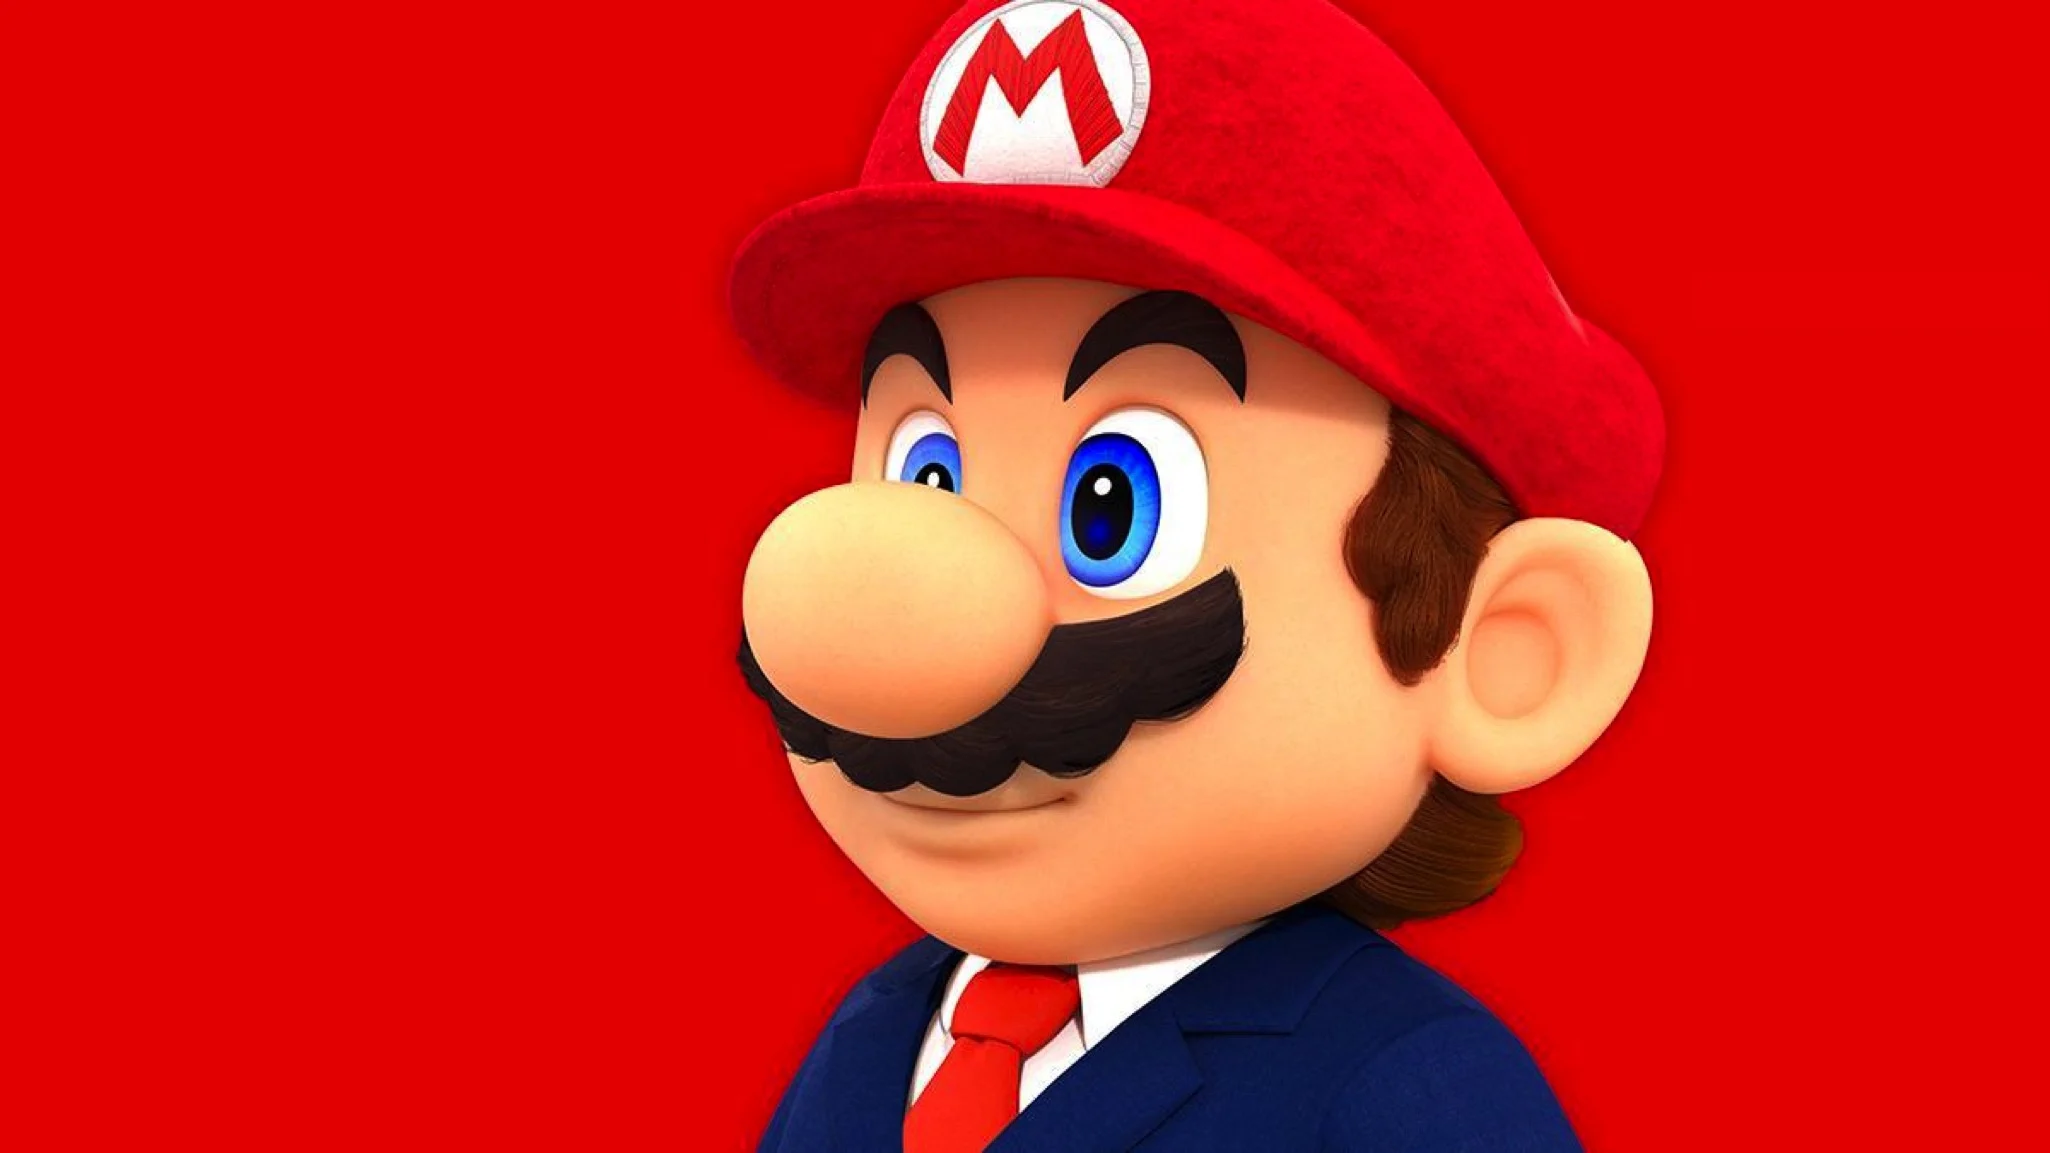 Por qué se habla de la muerte de Mario por internet? - HobbyConsolas Juegos